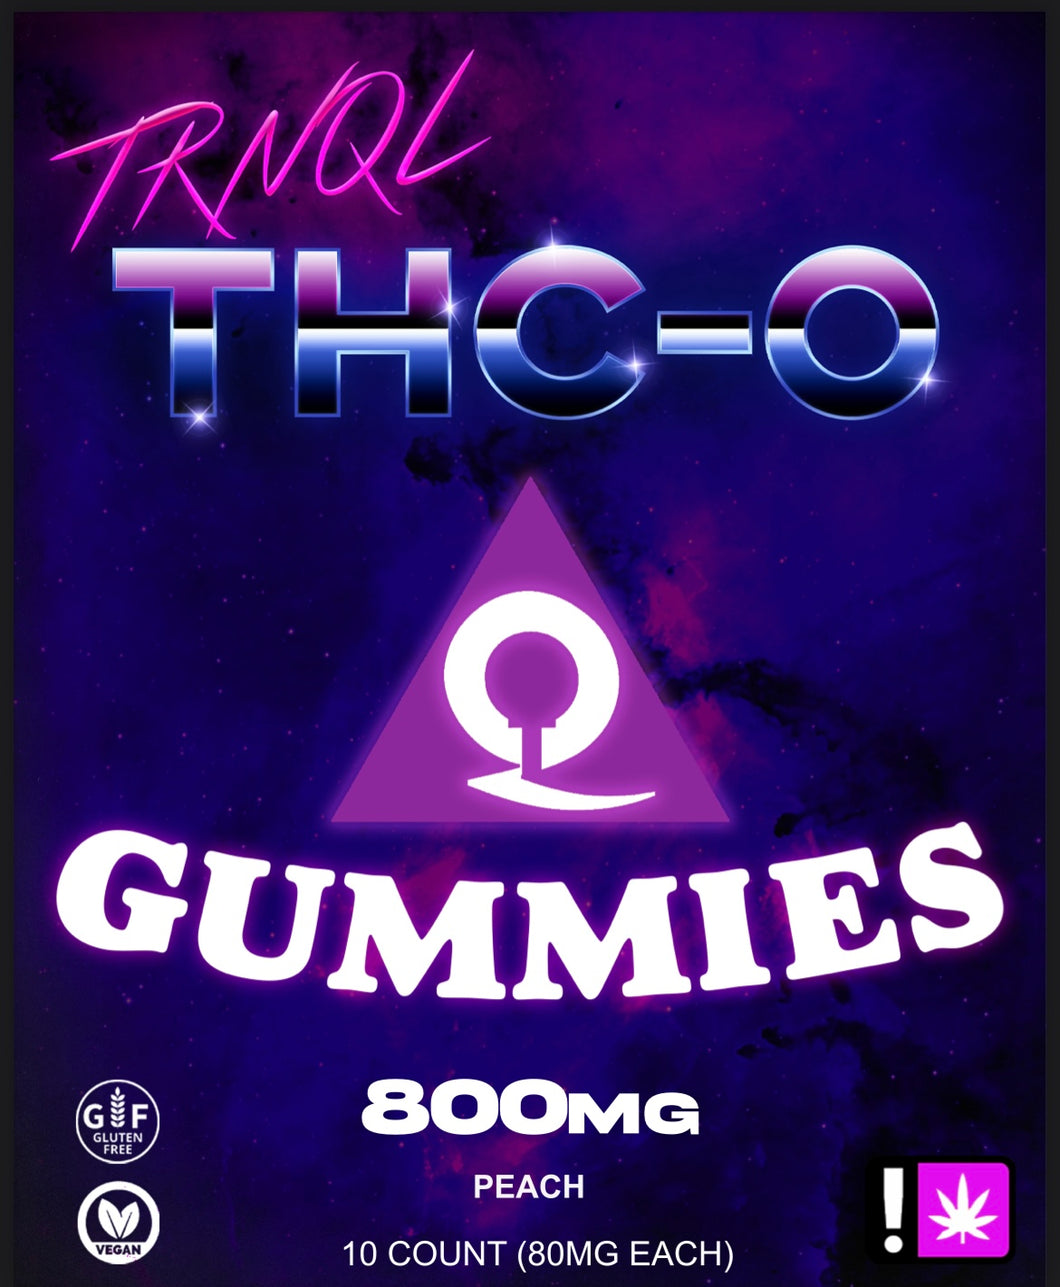 PEACH THC-O GUMMIES | 800mg